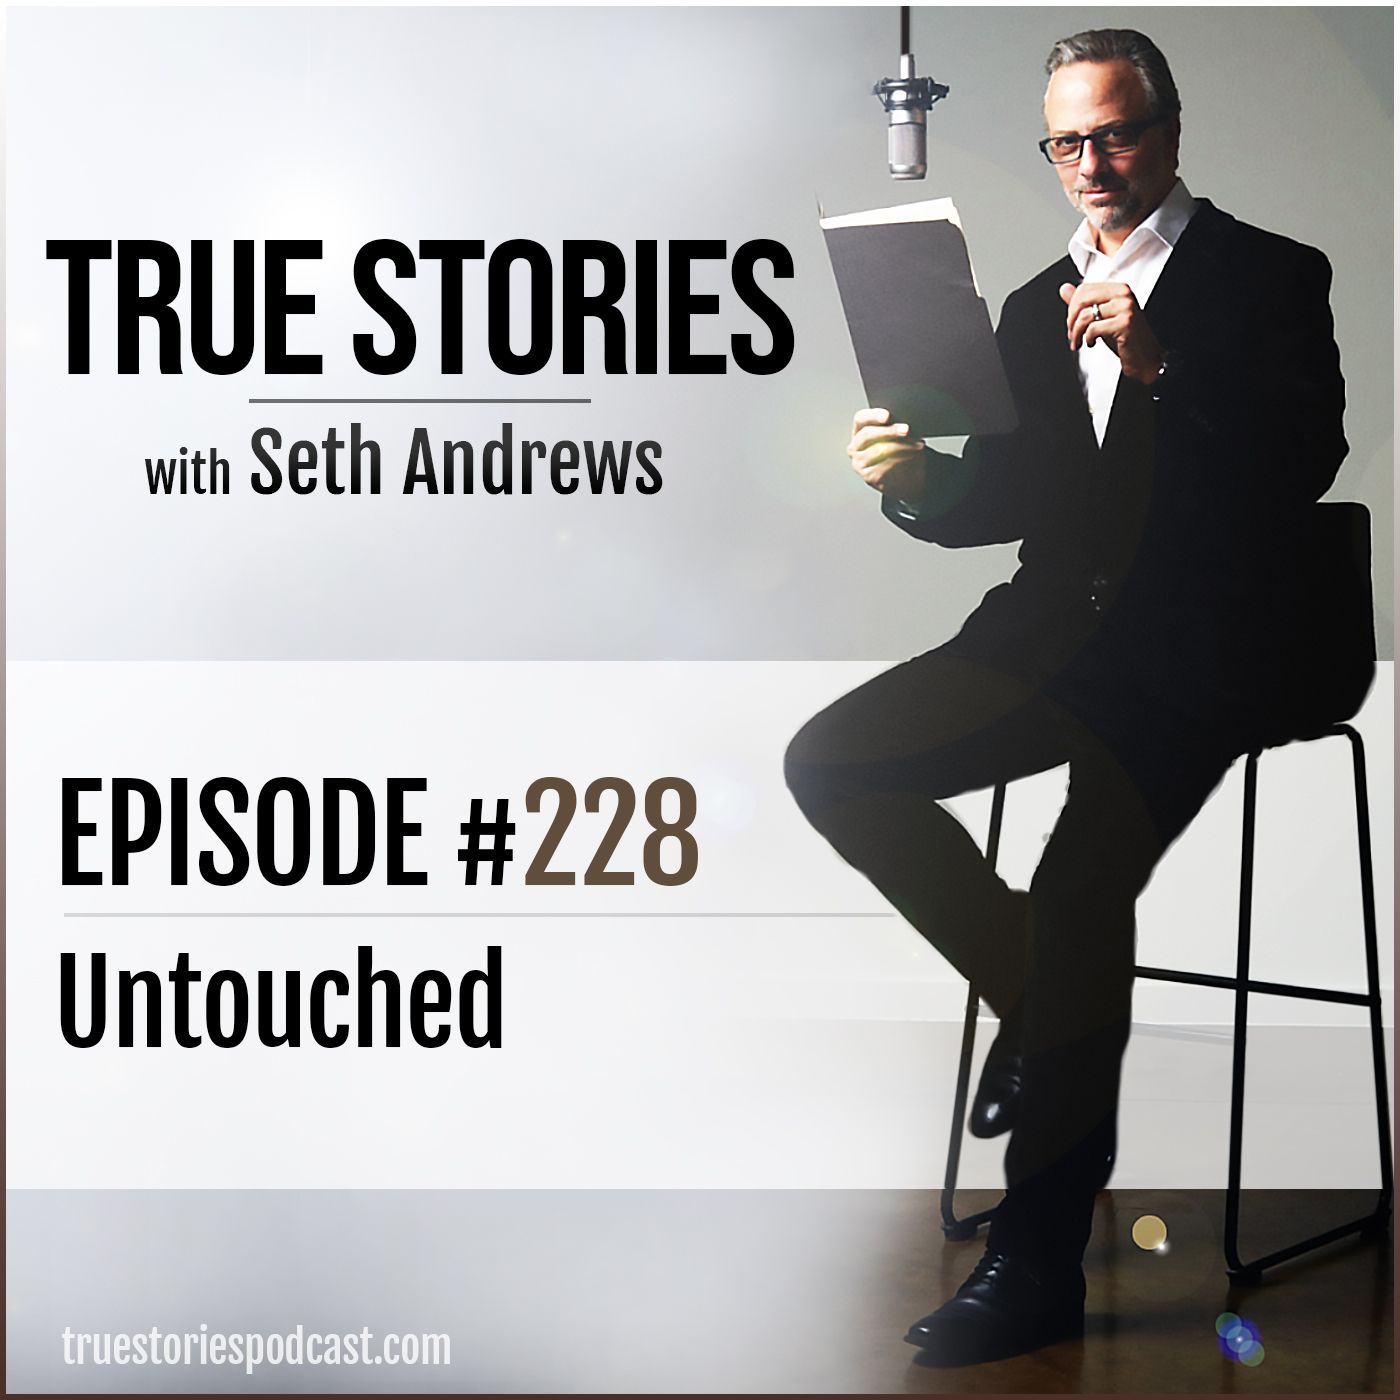 True Stories #228 - Untouched